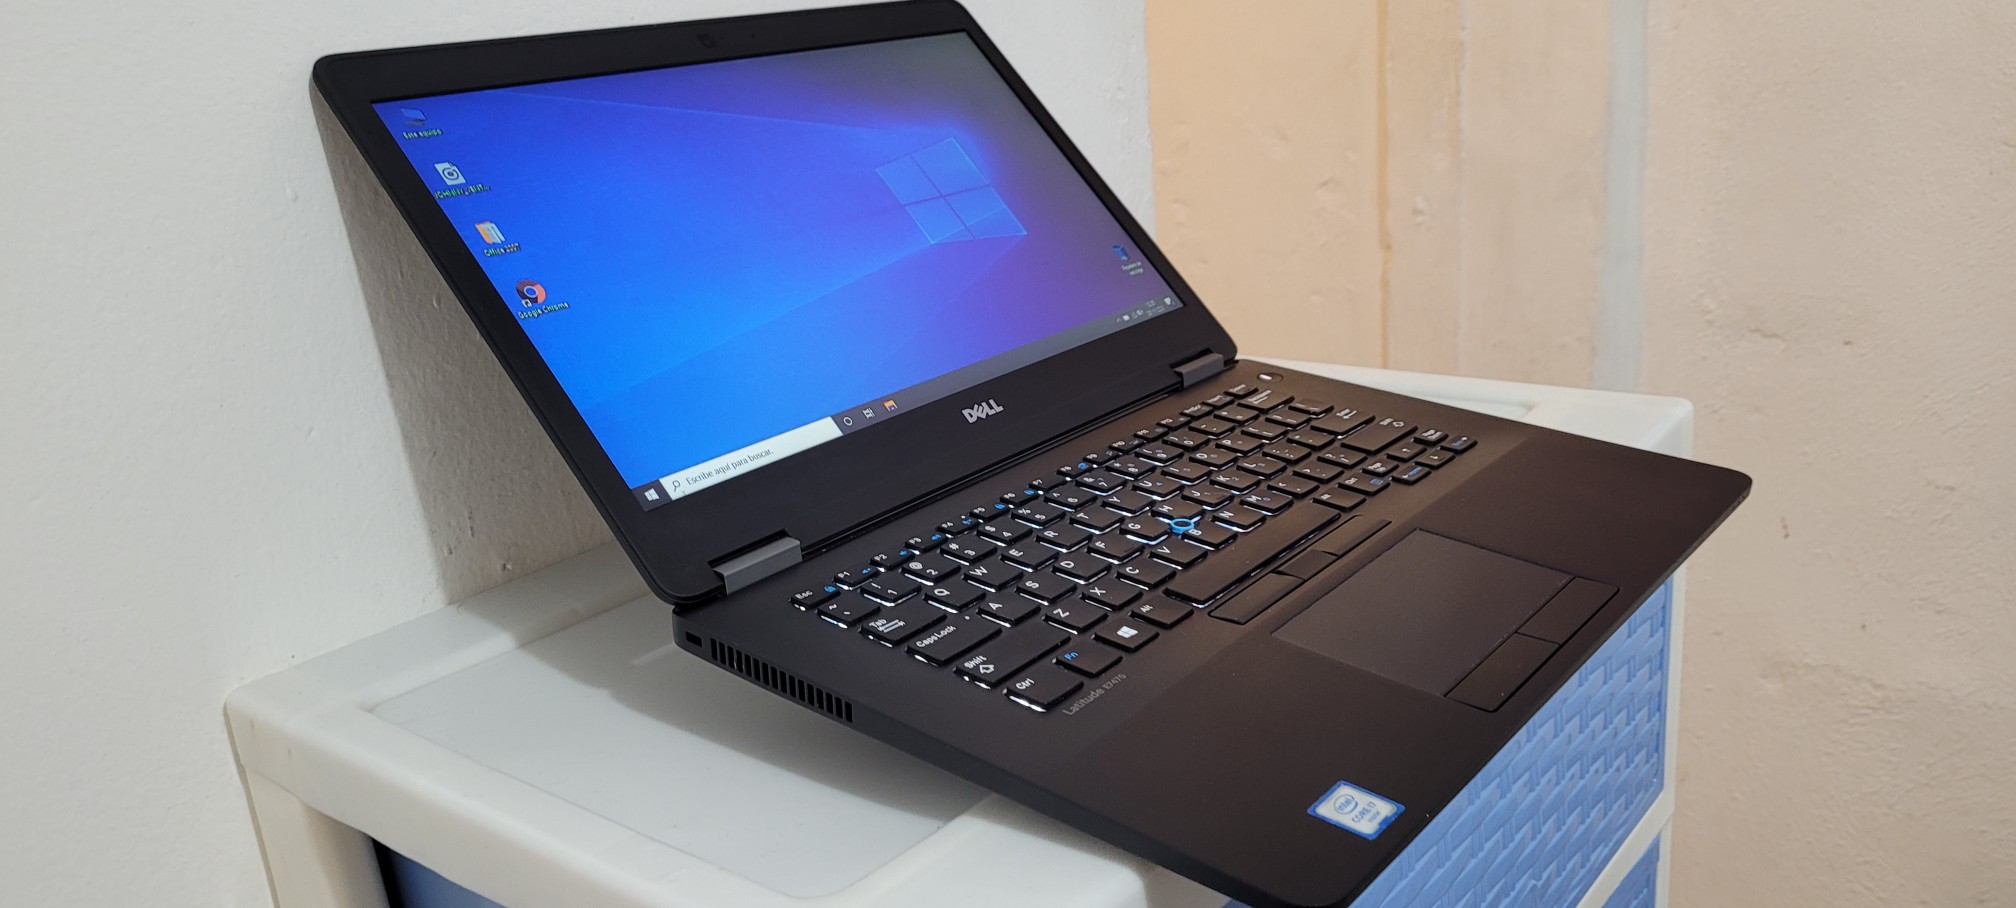 computadoras y laptops - Dell 7480 14 Pulg Core i5 7ma Gen Ram 8gb ddr4 Disco 128gb SSD Full 1080p 1